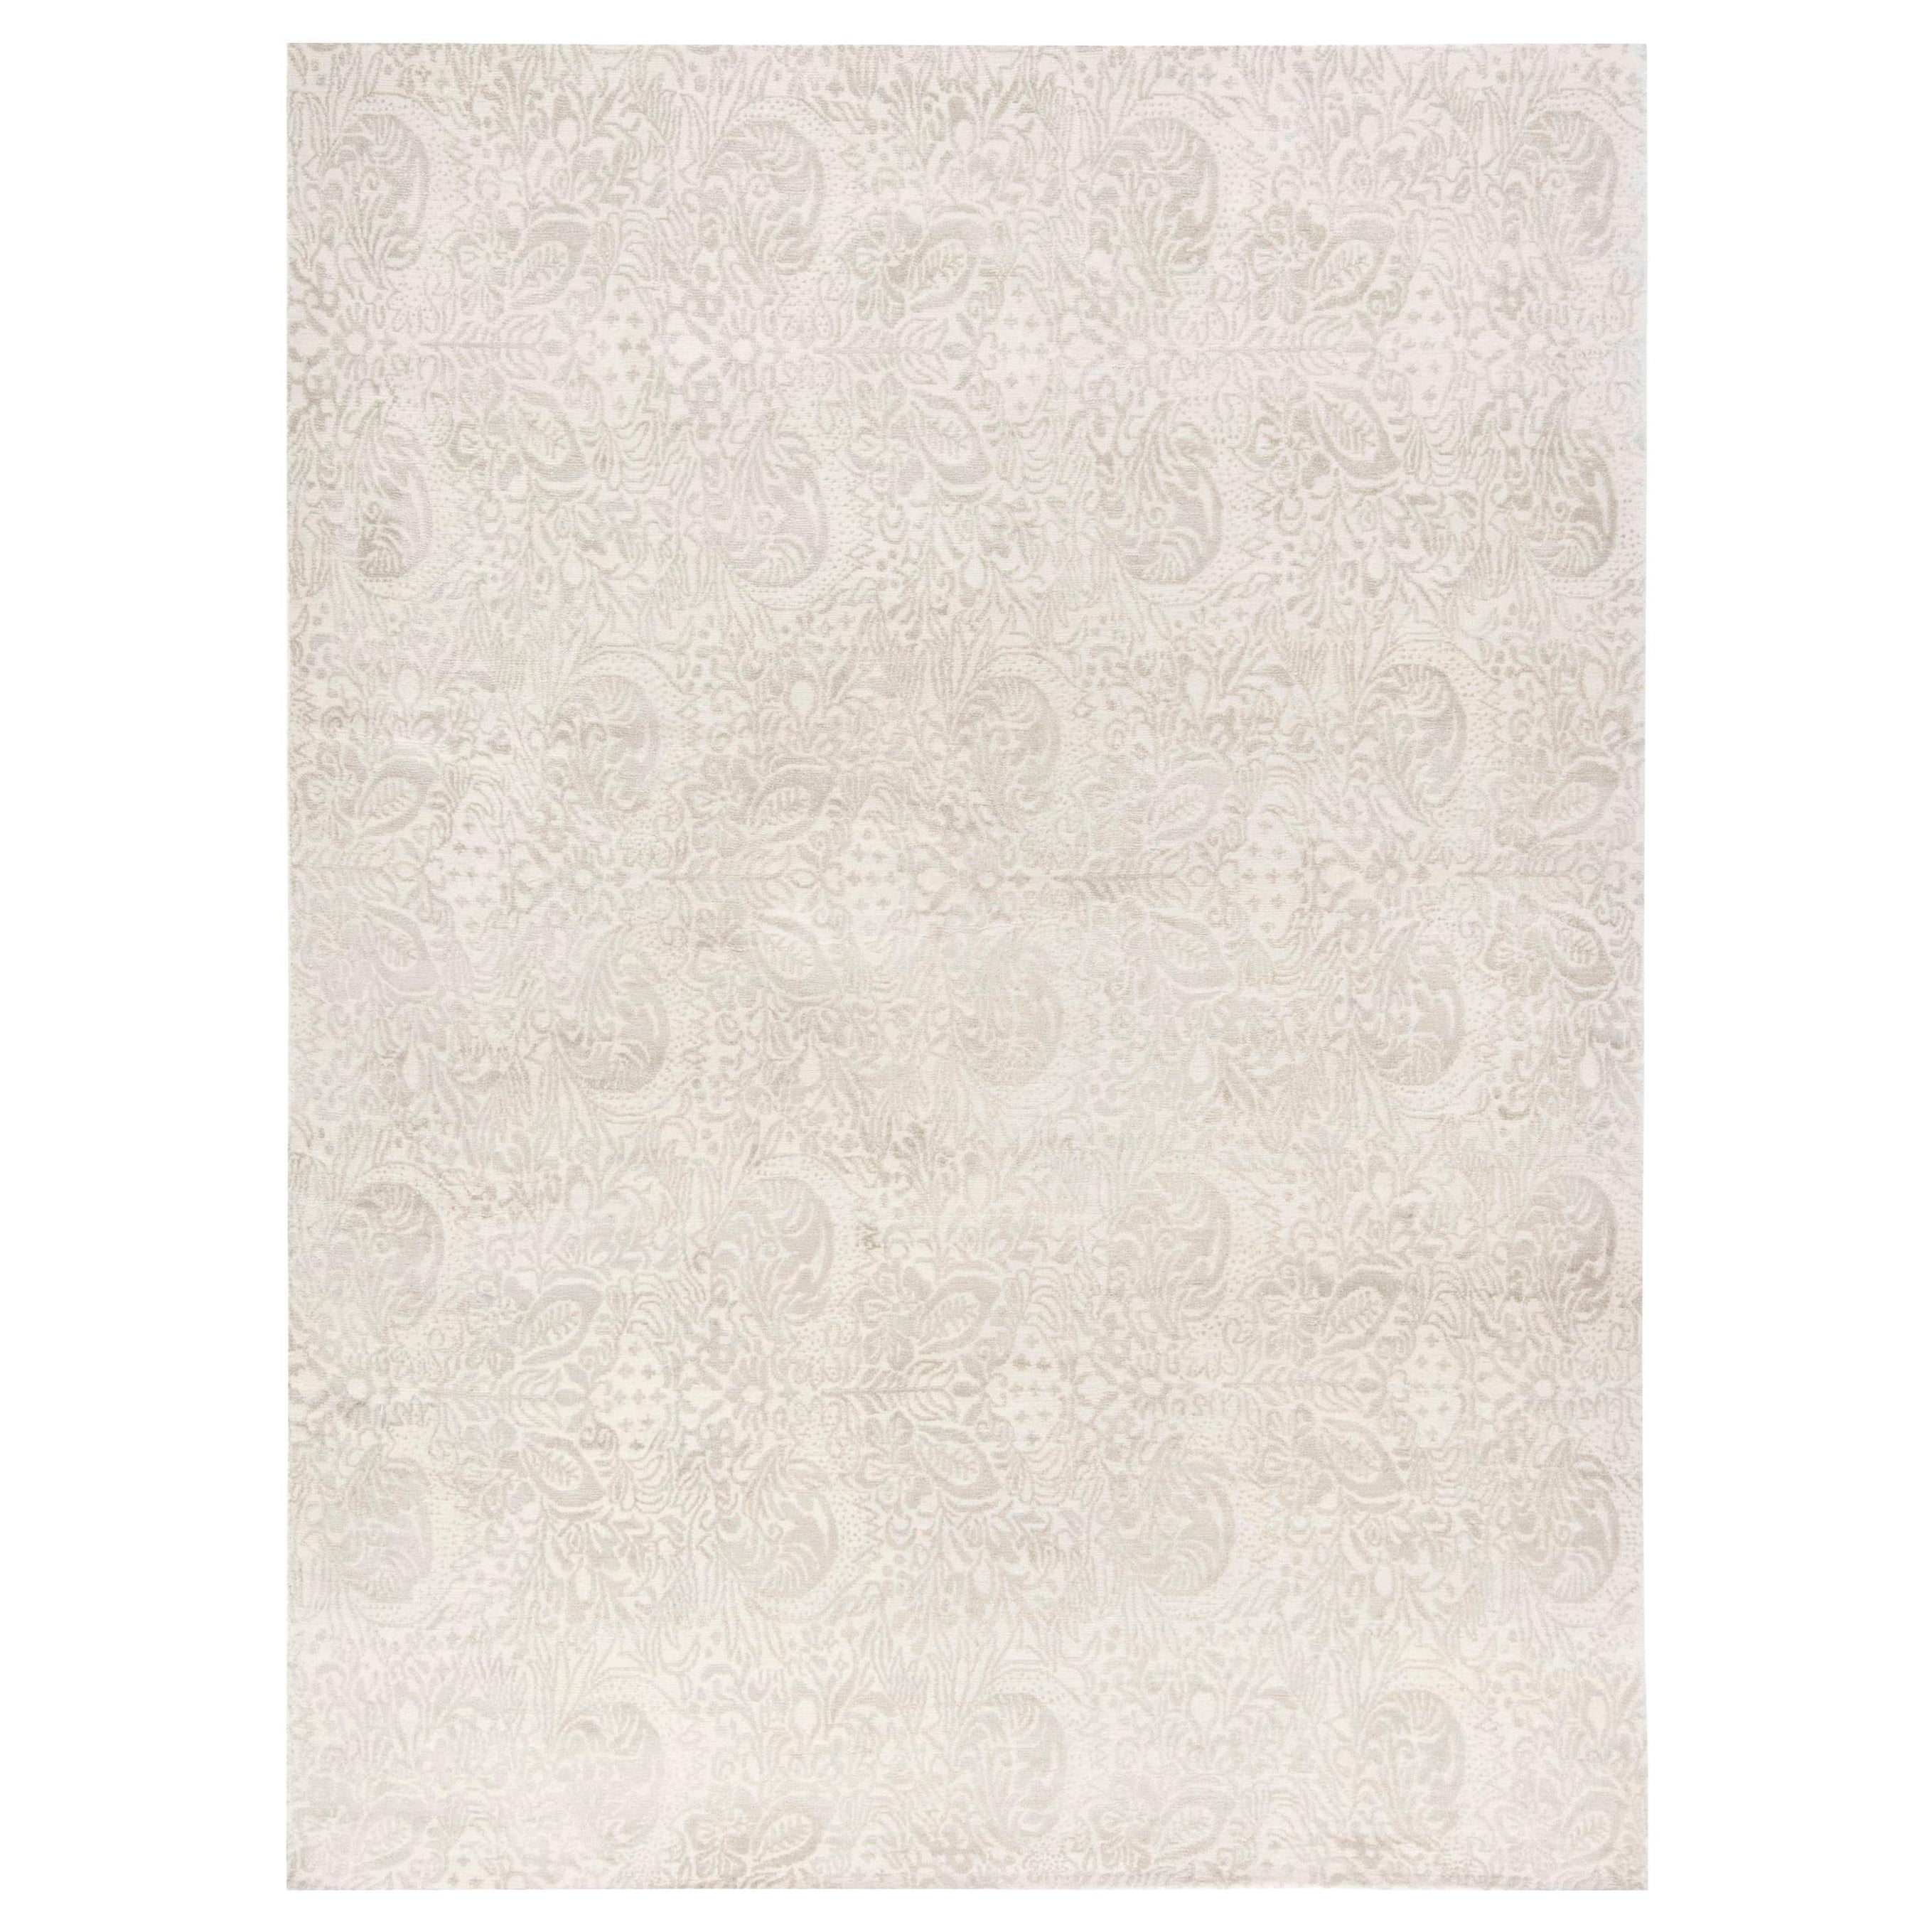 Zeitgenössischer, traditioneller, inspirierter geblümter Teppich von Doris Leslie Blau